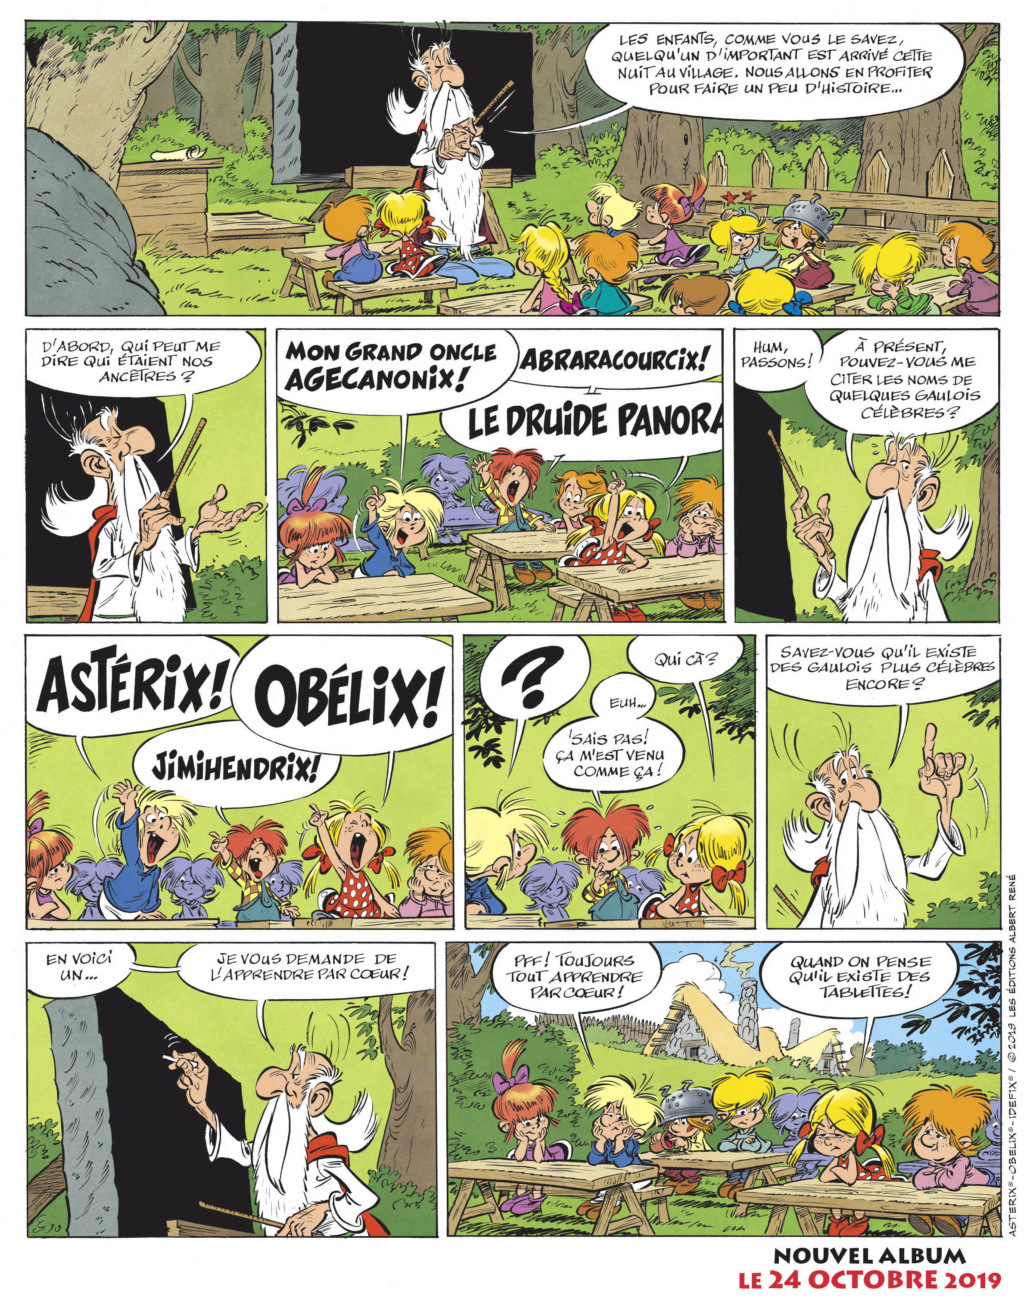 Eternel Astérix ! - Page 15 Annonc10